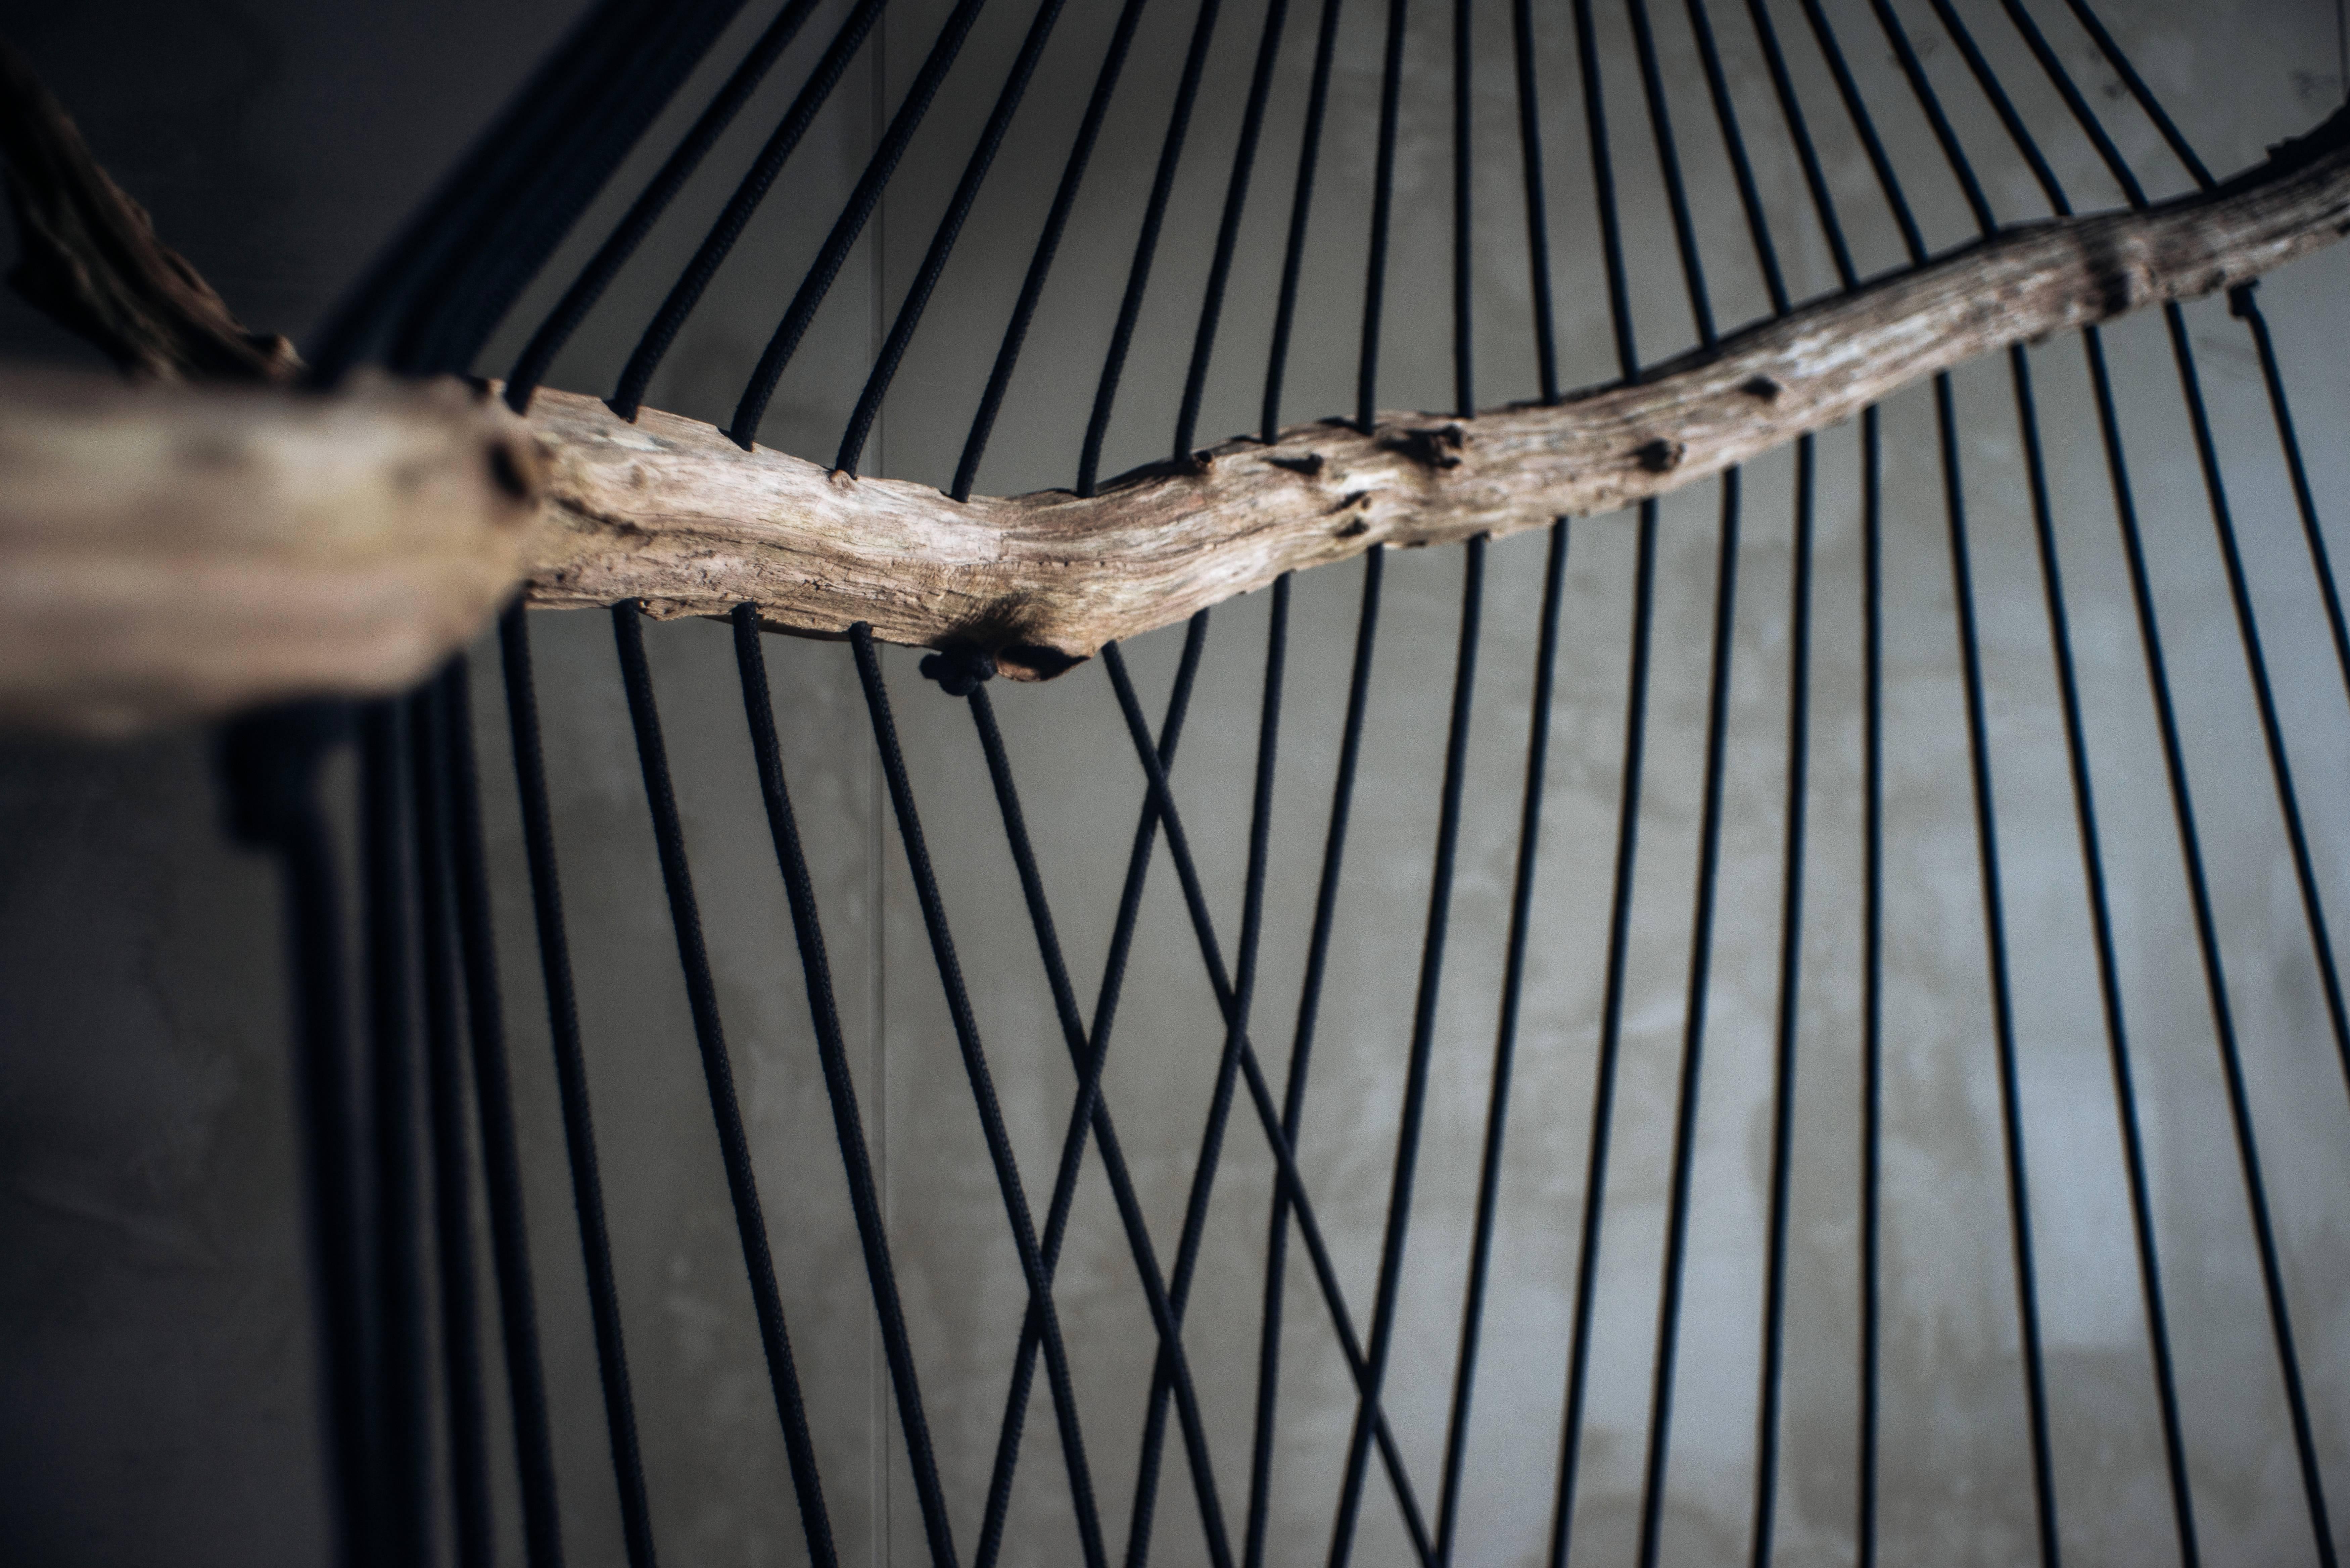 Schwebender Diwan in Skulptur von Chiel Kuijl
WDSTCK-Studio
Abmessungen: B 120 x T 60 x H 185 cm (Maße können abweichen)
MATERIALIEN: Robustes europäisches Holz

Der schwebende Diwan von Chiel Kuijl ist direkt aus seinen Kunstinstallationen